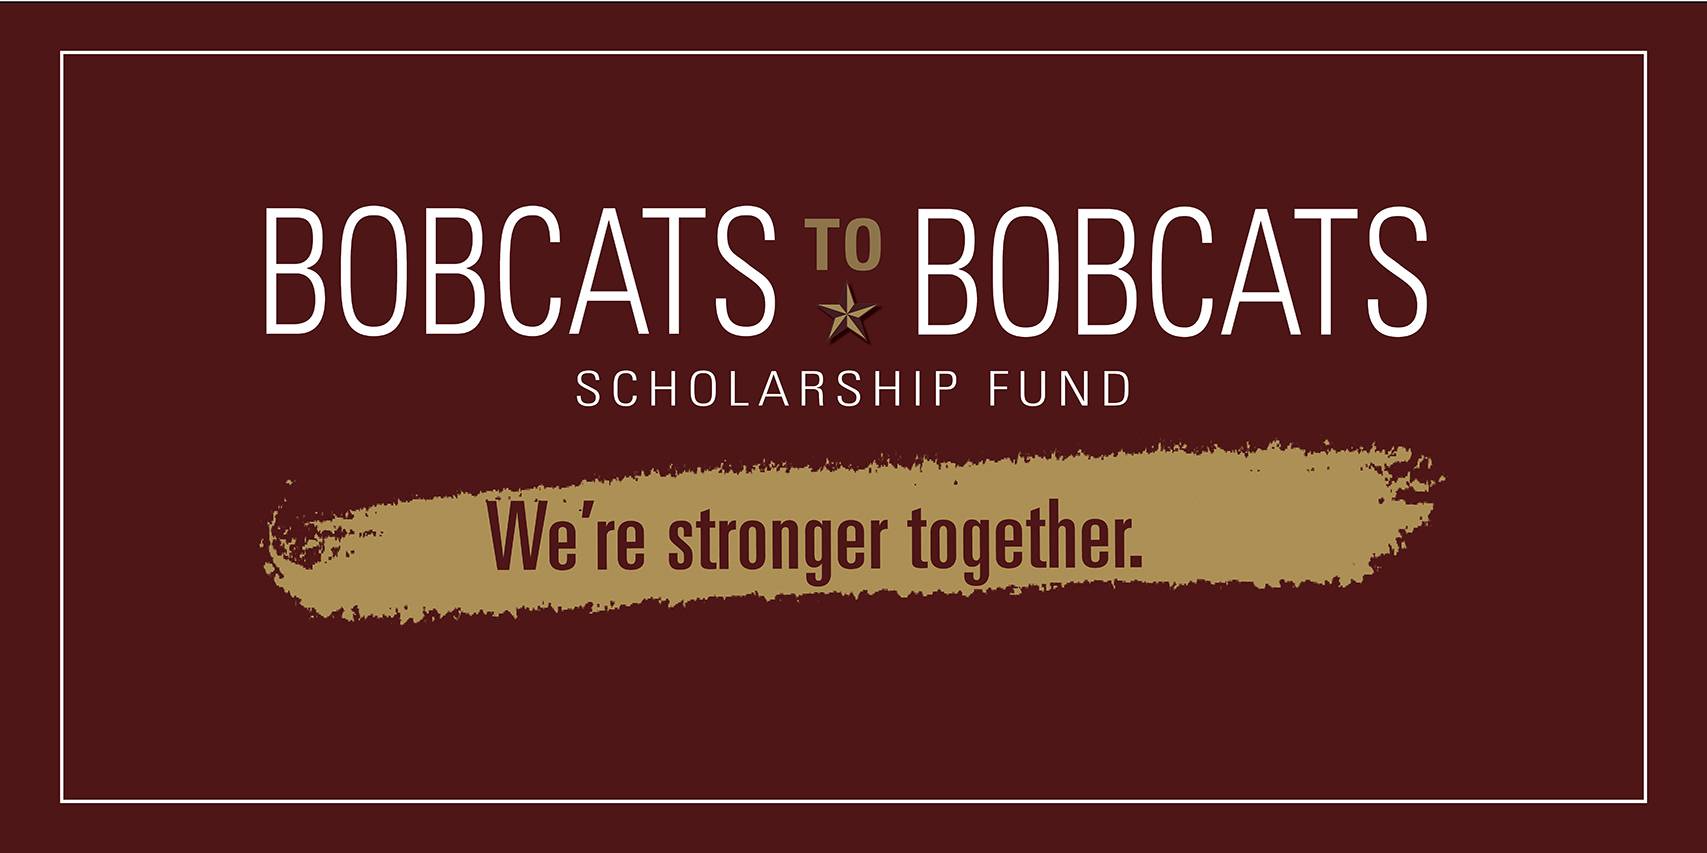 bobcats to bobcats scholarship logo